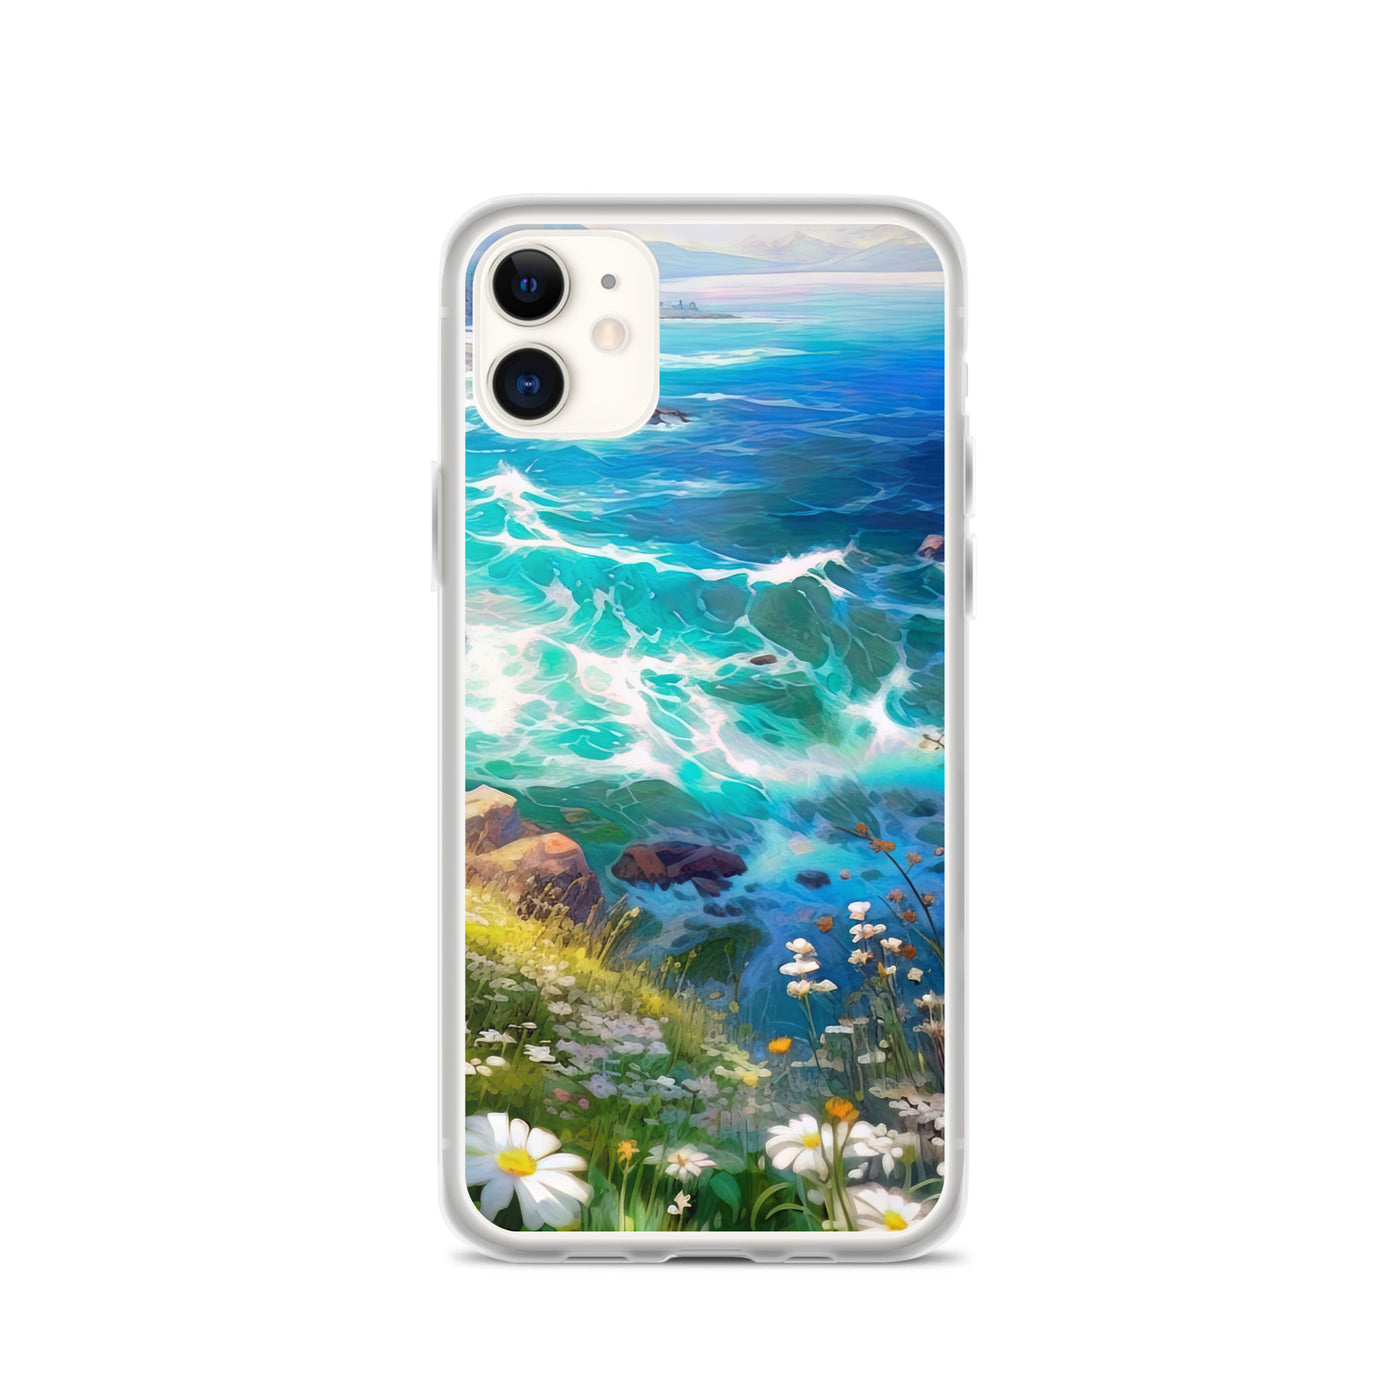 Berge, Blumen, Fluss und Steine - Malerei - iPhone Schutzhülle (durchsichtig) camping xxx iPhone 11